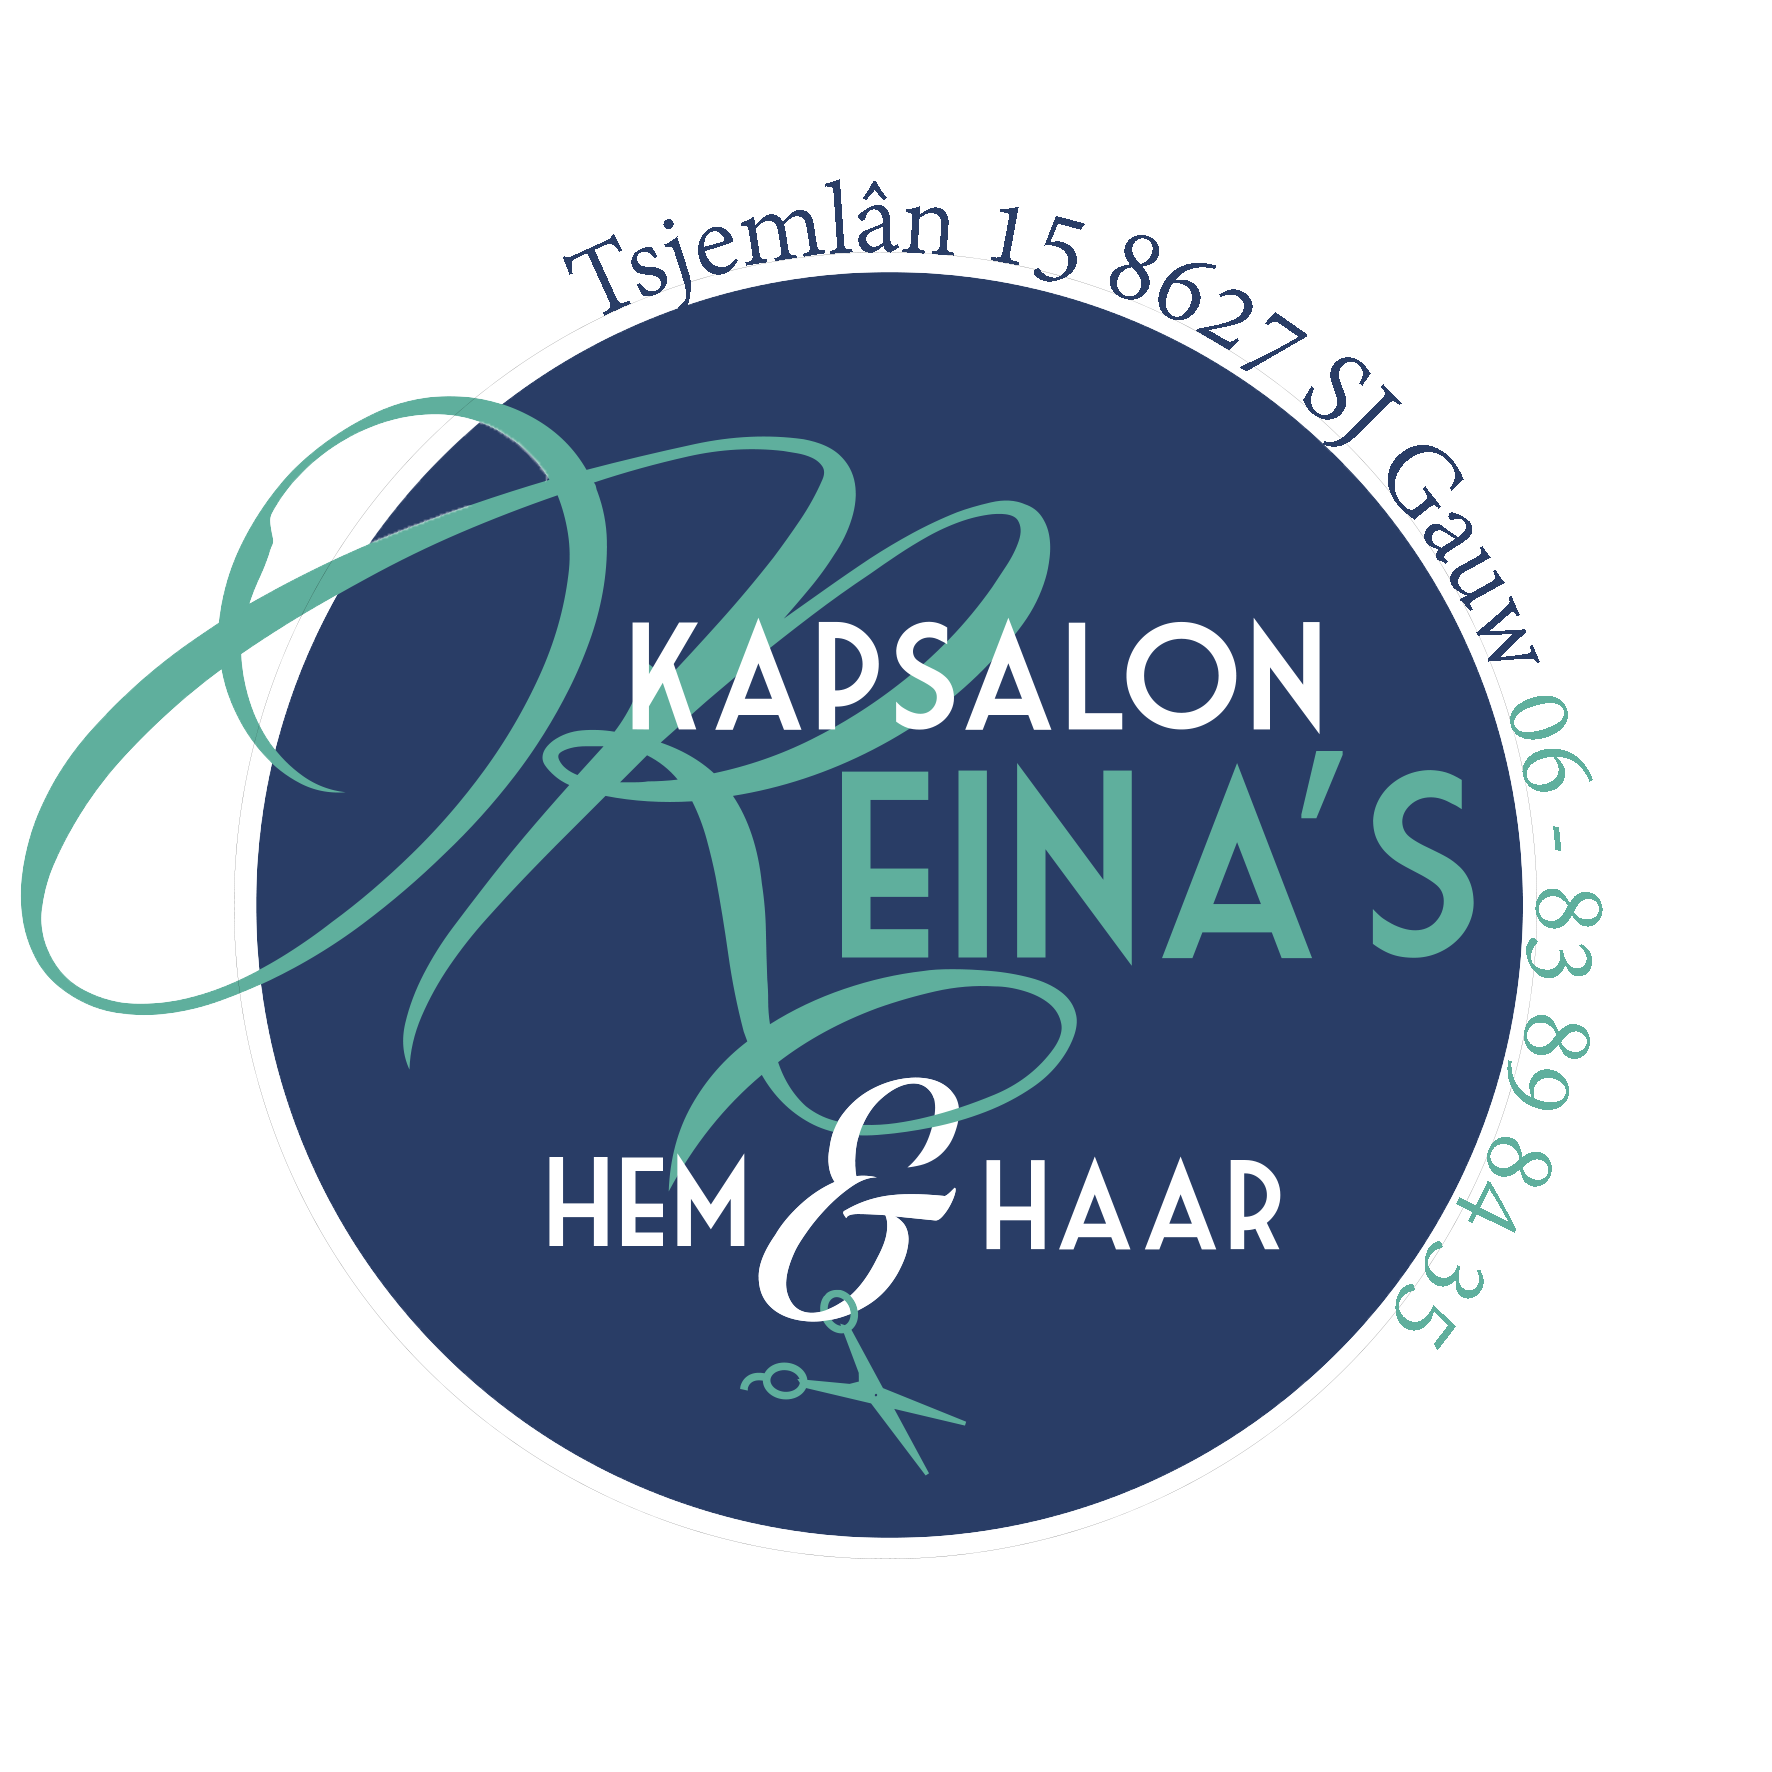 Kapsalon Reina's Logo